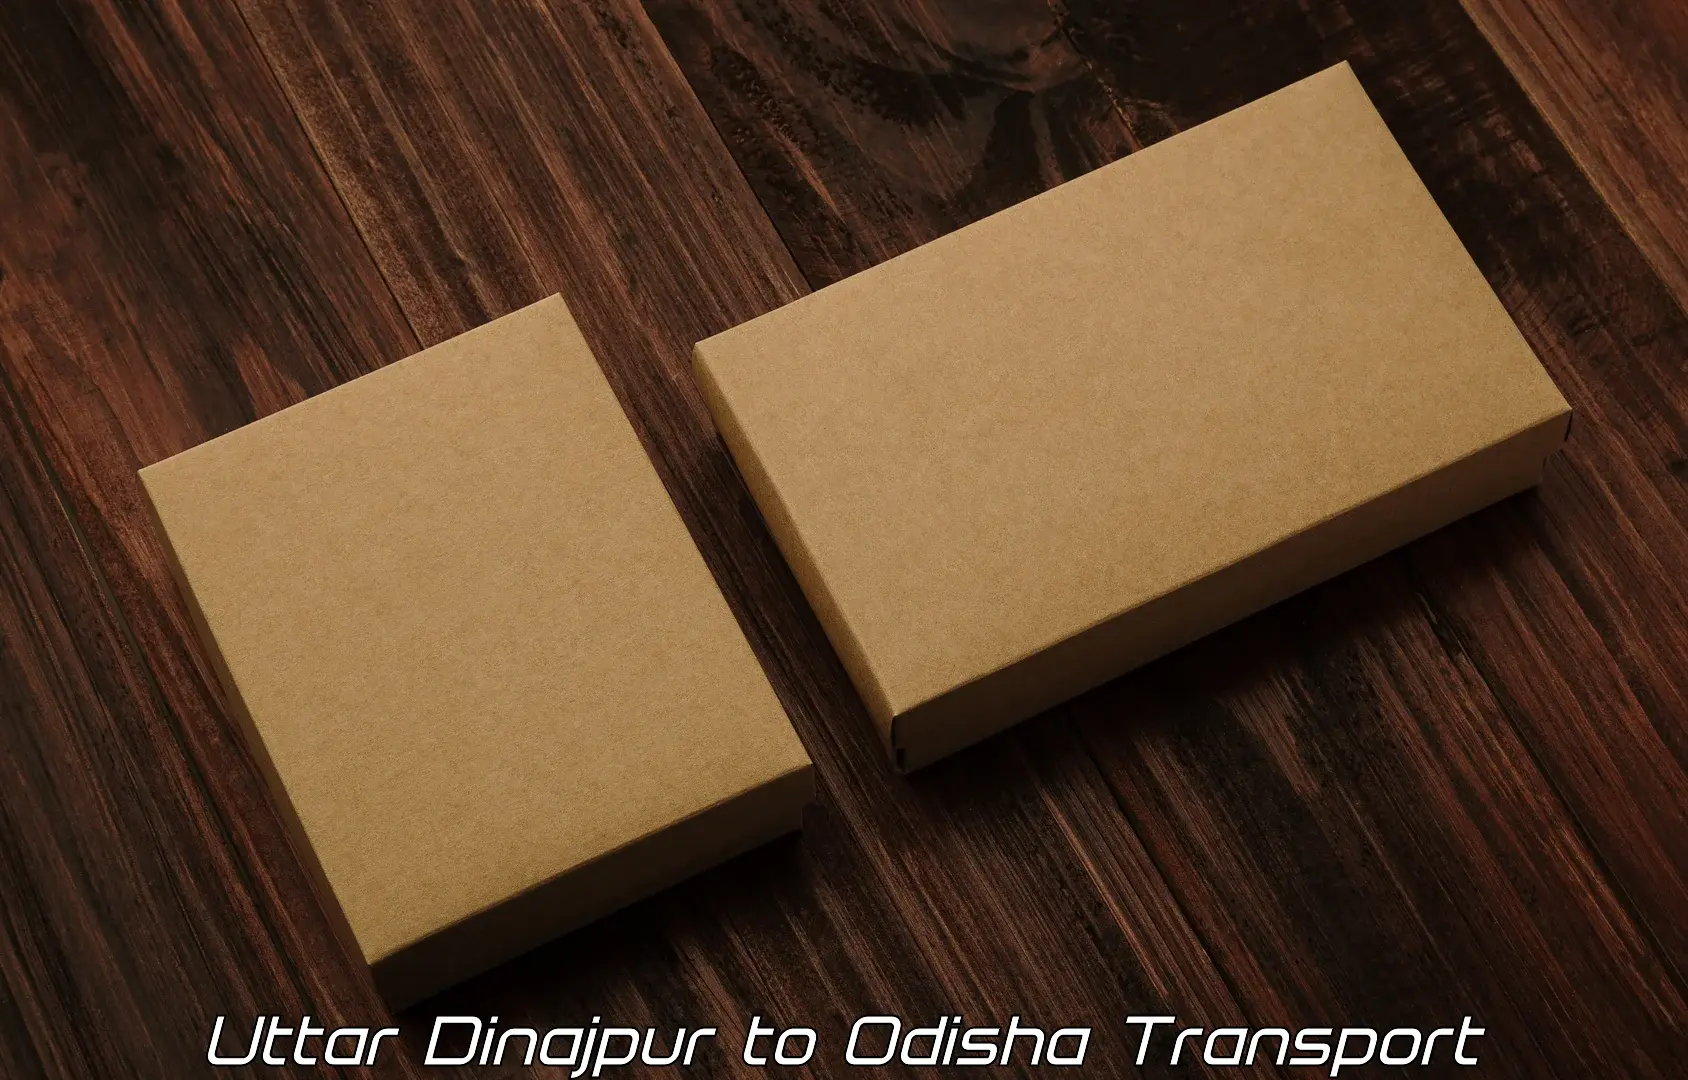 Transport in sharing Uttar Dinajpur to Chandbali